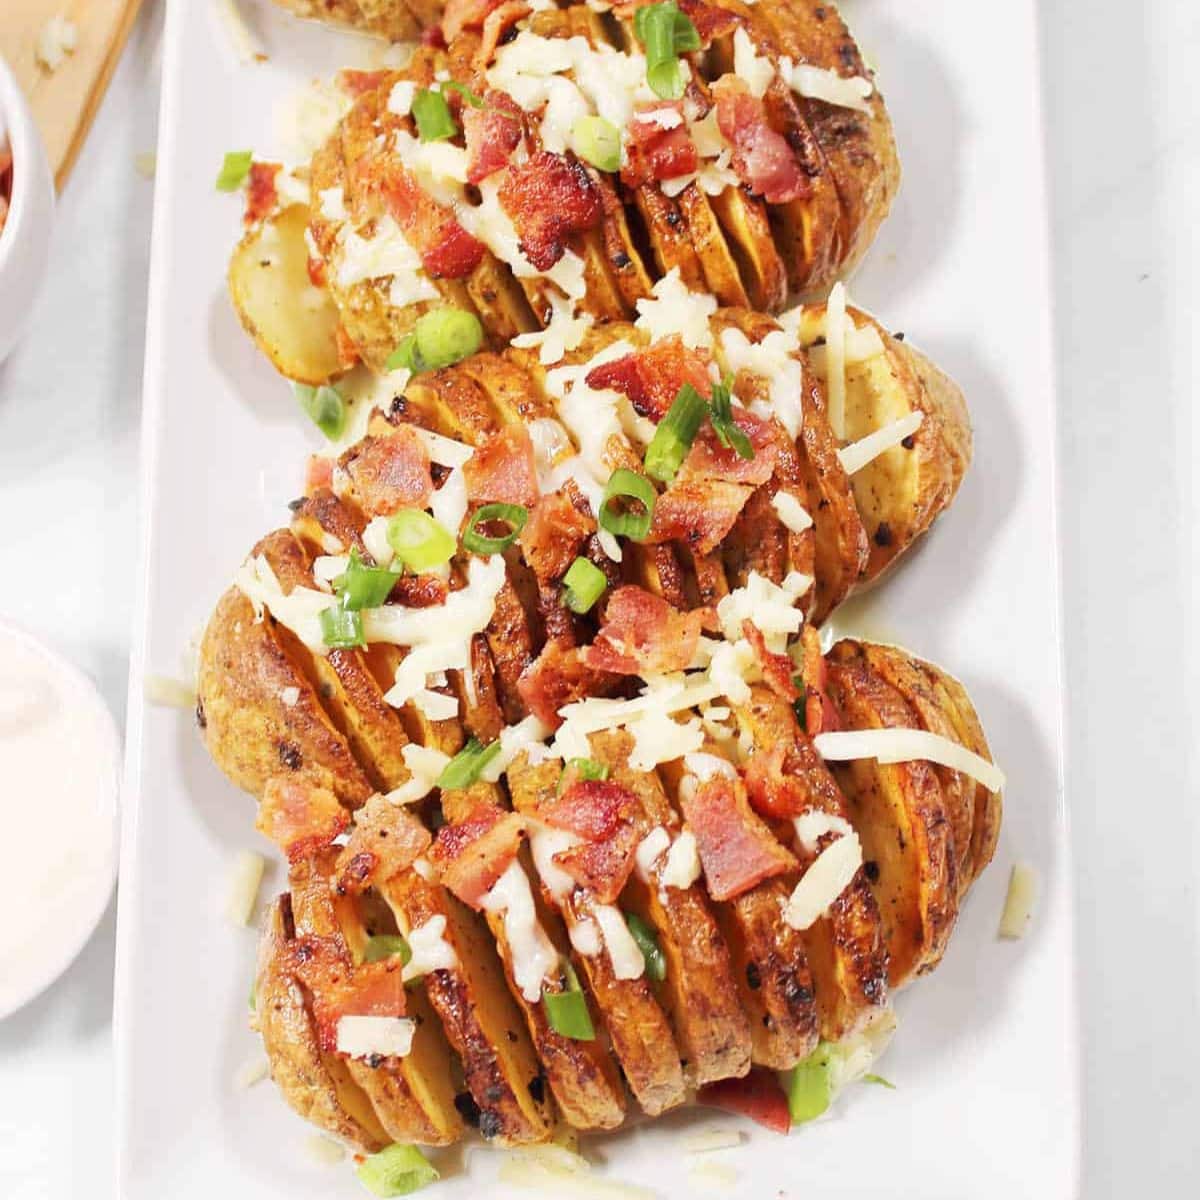 Air fryer hasselback potatoes on a platter.